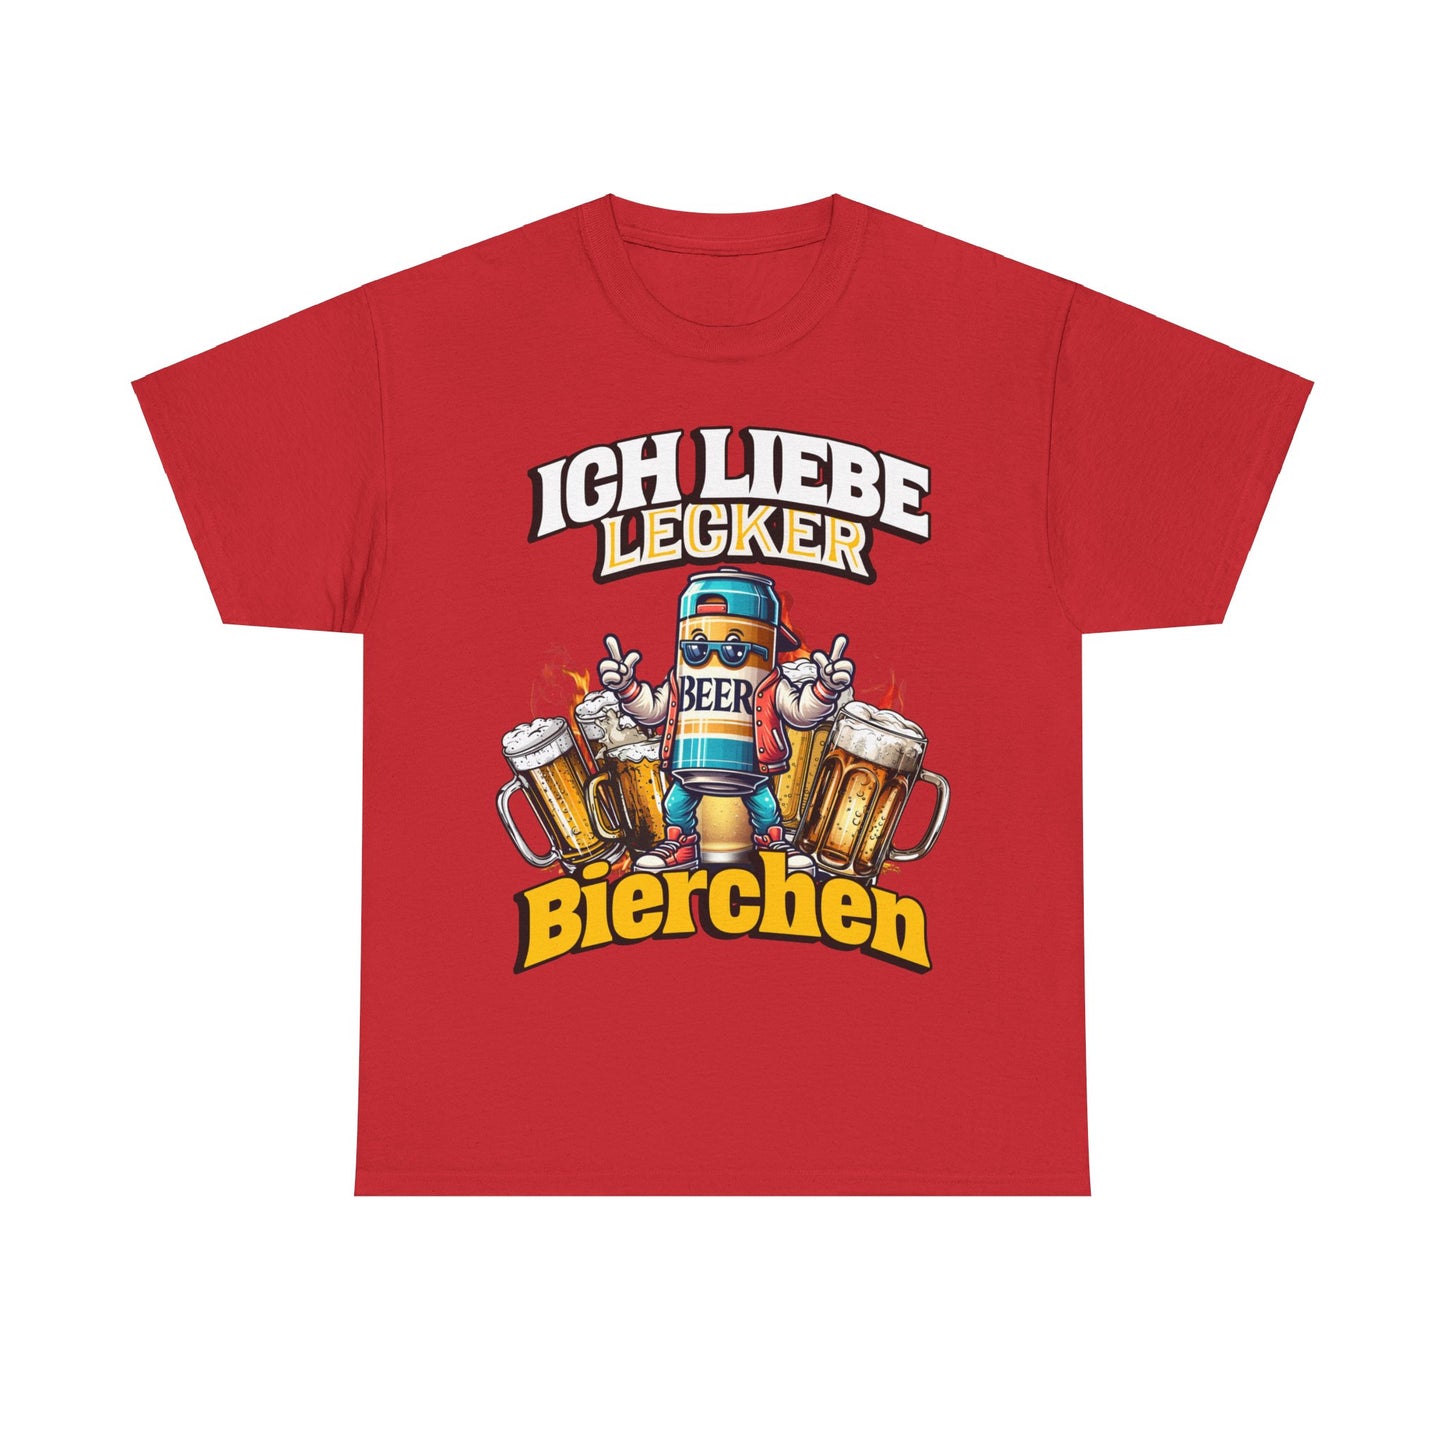 Unser "Ich liebe lecker Bierchen" T-Shirt ist das ultimative Party-Essential! Perfekt für Ballermann-Fans und alle, die gerne feiern. Mit diesem Shirt bist du der Star auf jeder Party und zeigst deine Liebe zum Bier. Ideal für Junggesellenabschiede, Festivals und gemütliche Bierabende. Prost! Ballermann, Bierfans,Party